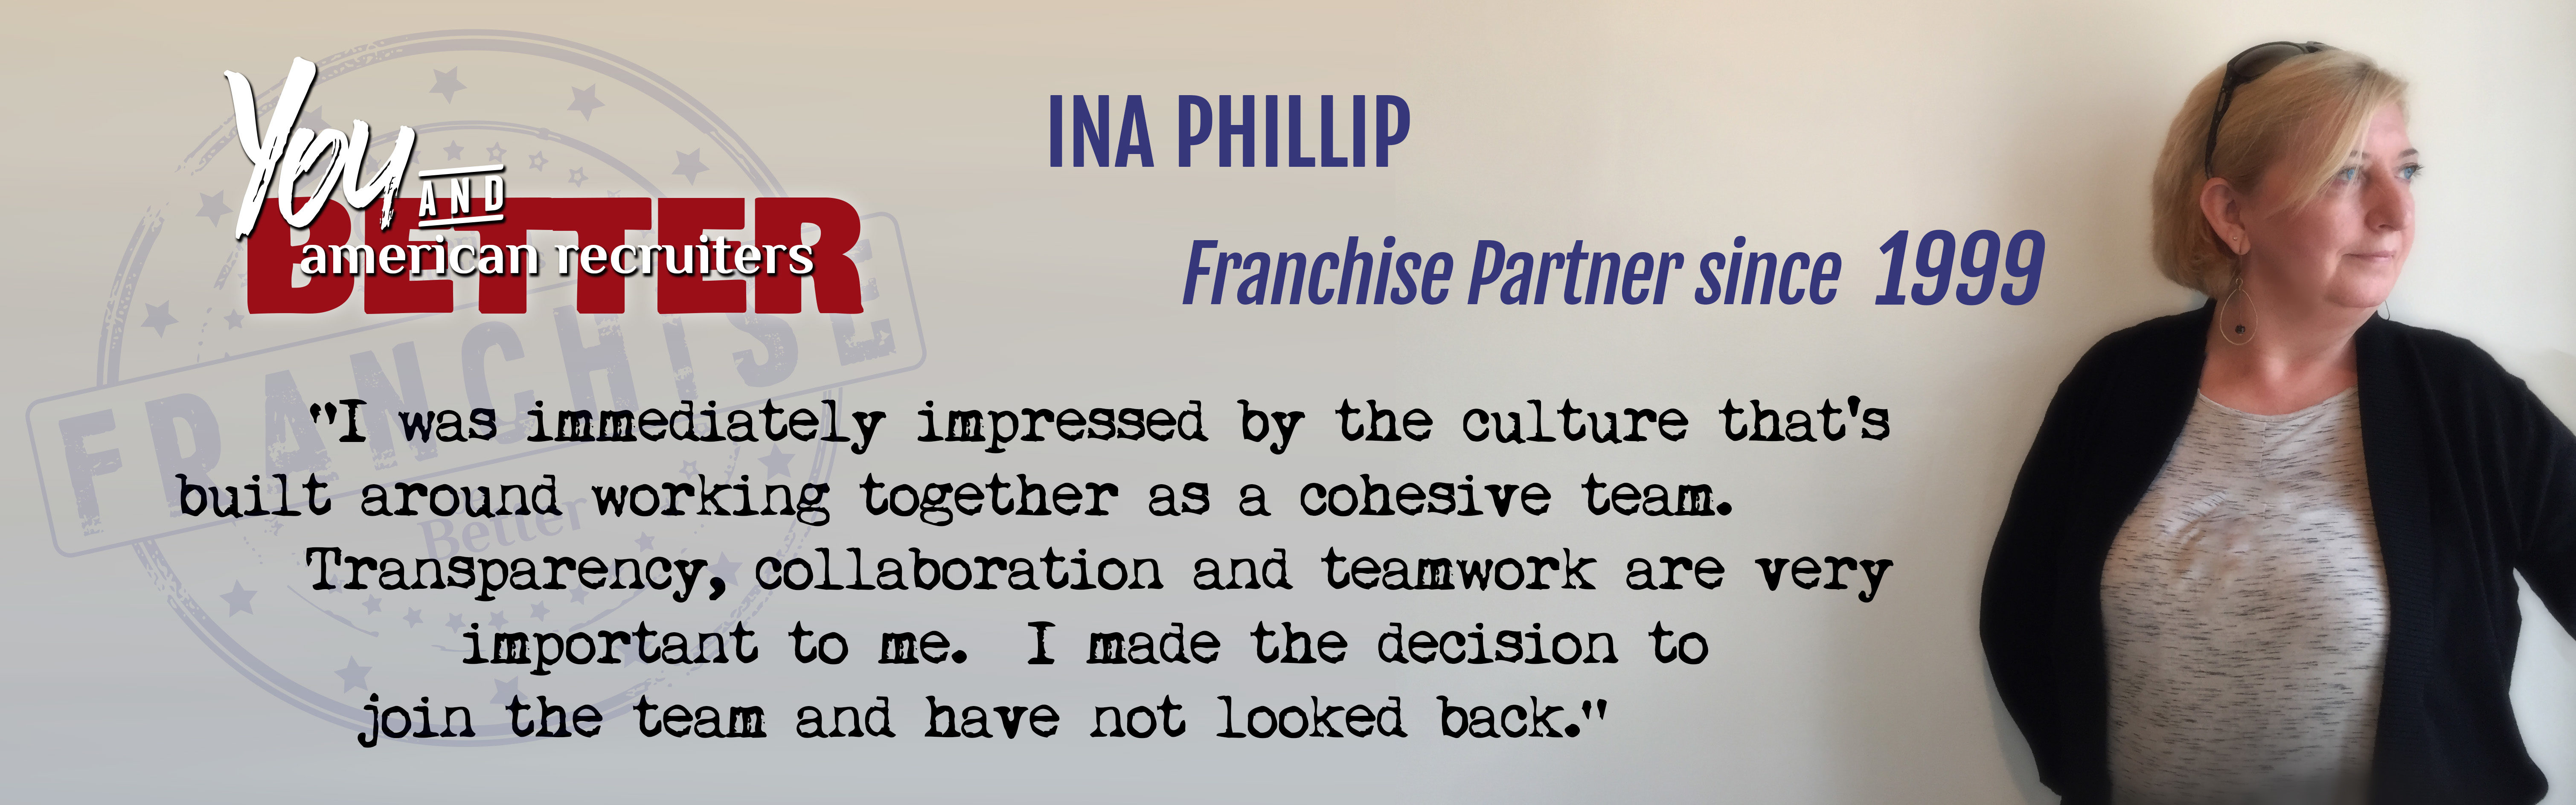 franchise-owner-testimonial-ina-phillip